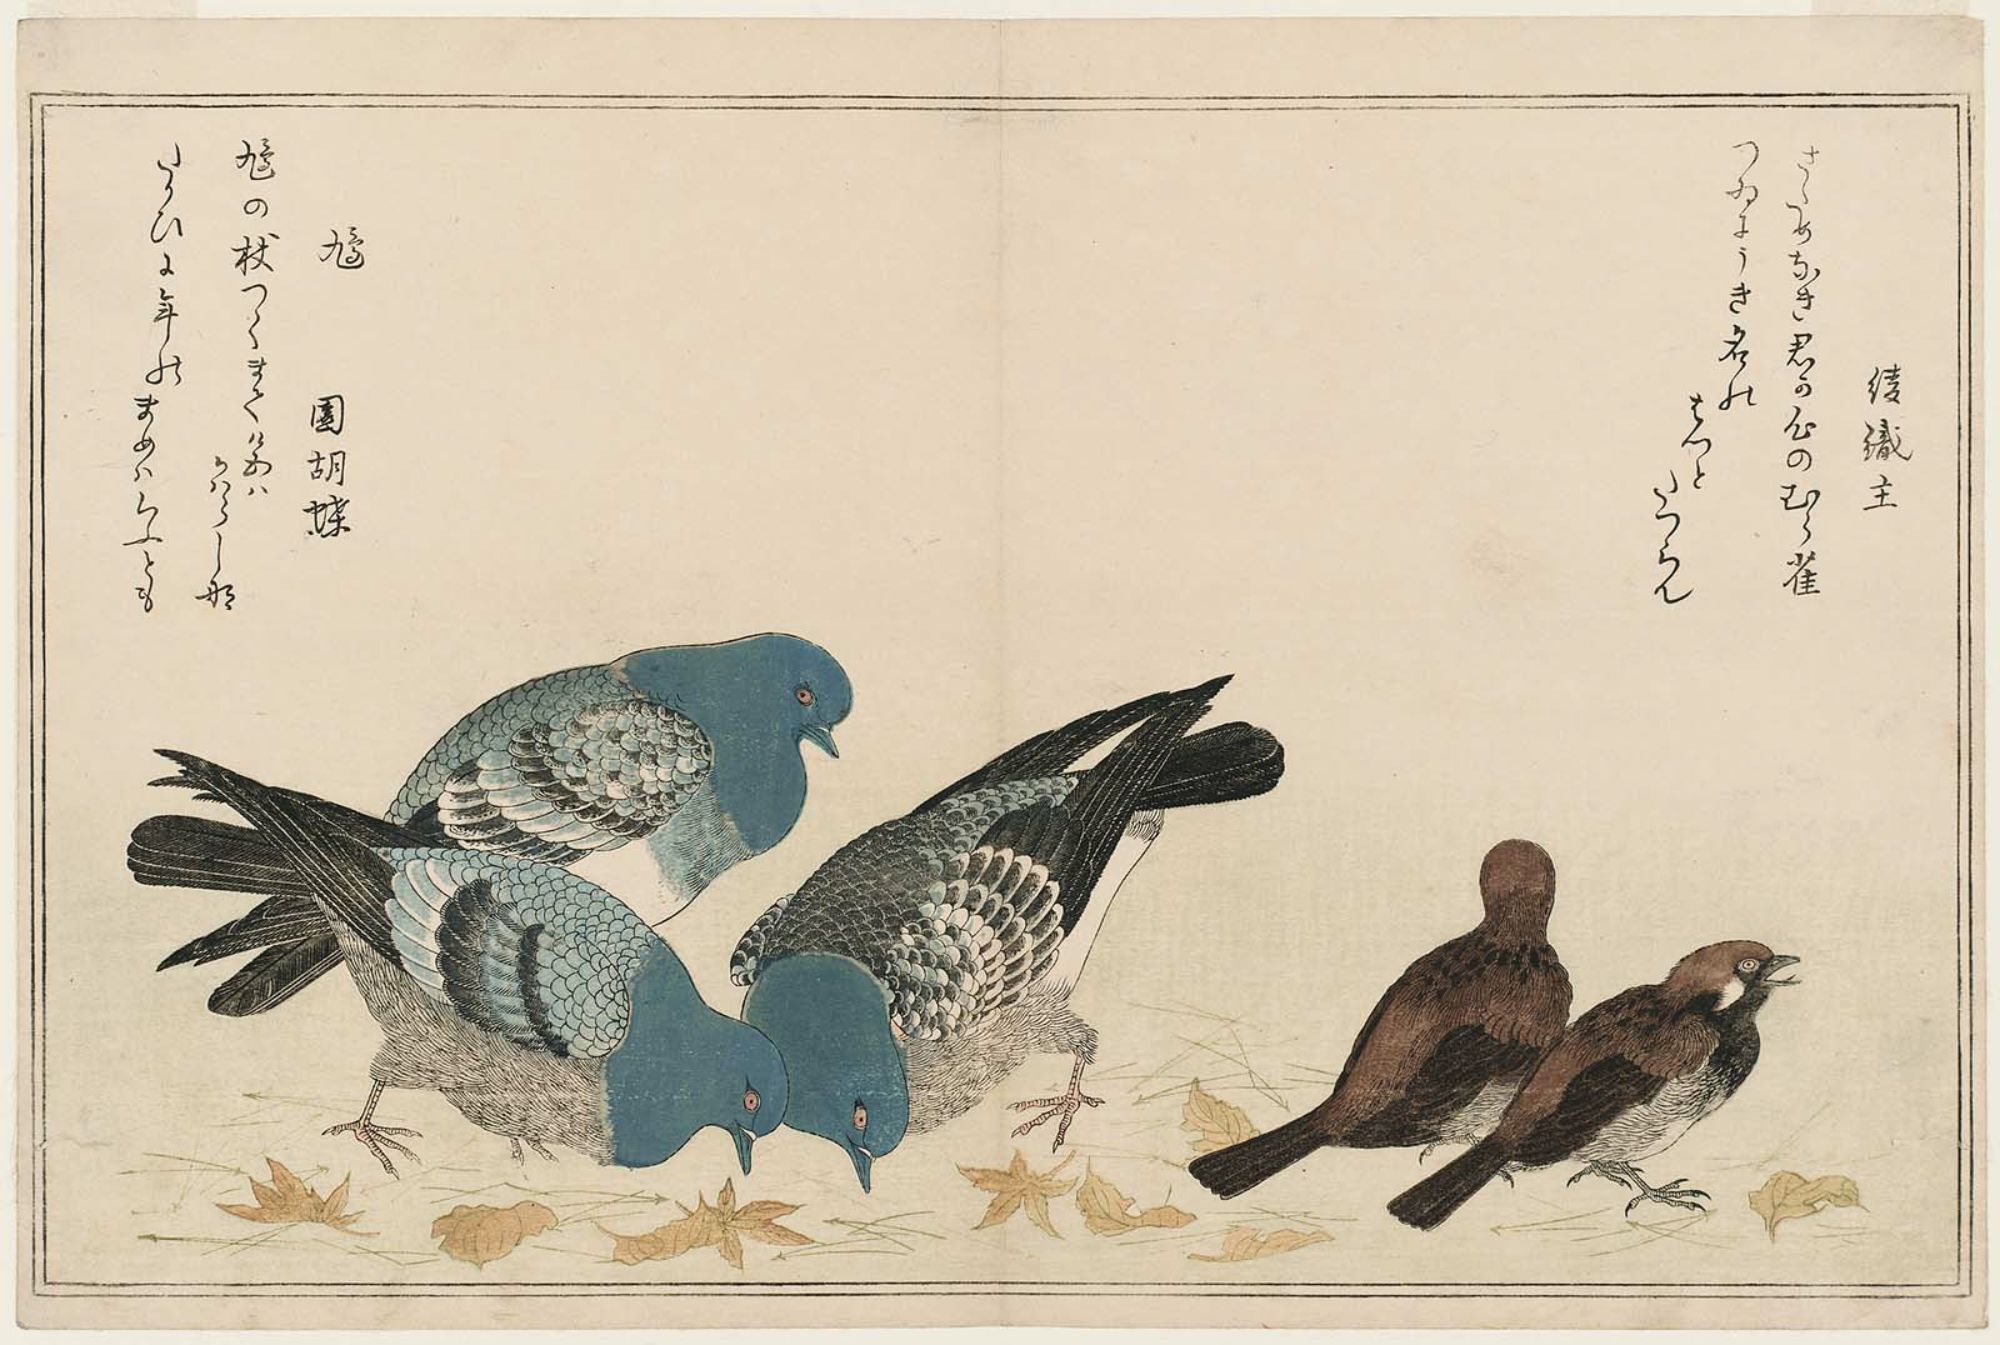 喜多川歌麿: Sparrows (Murasuzume) and Pigeons (Hato), from the 